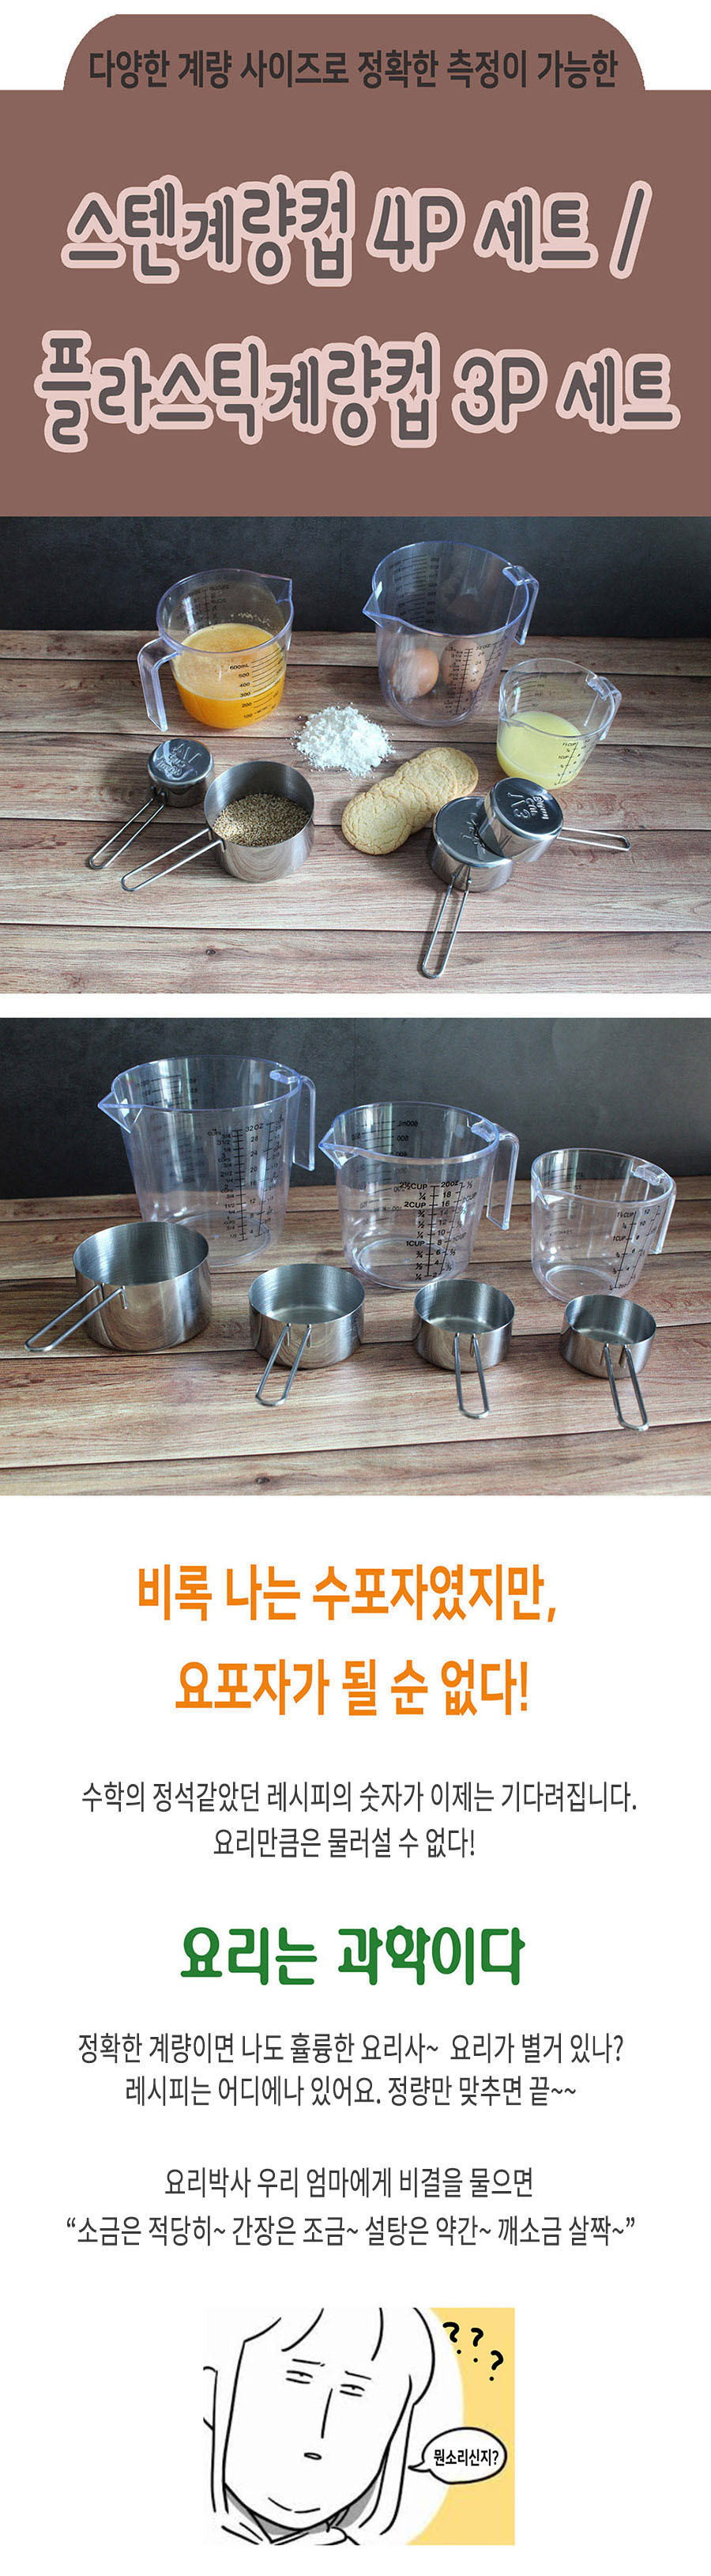 스테인리스 계량컵, 플라스틱 계량컵